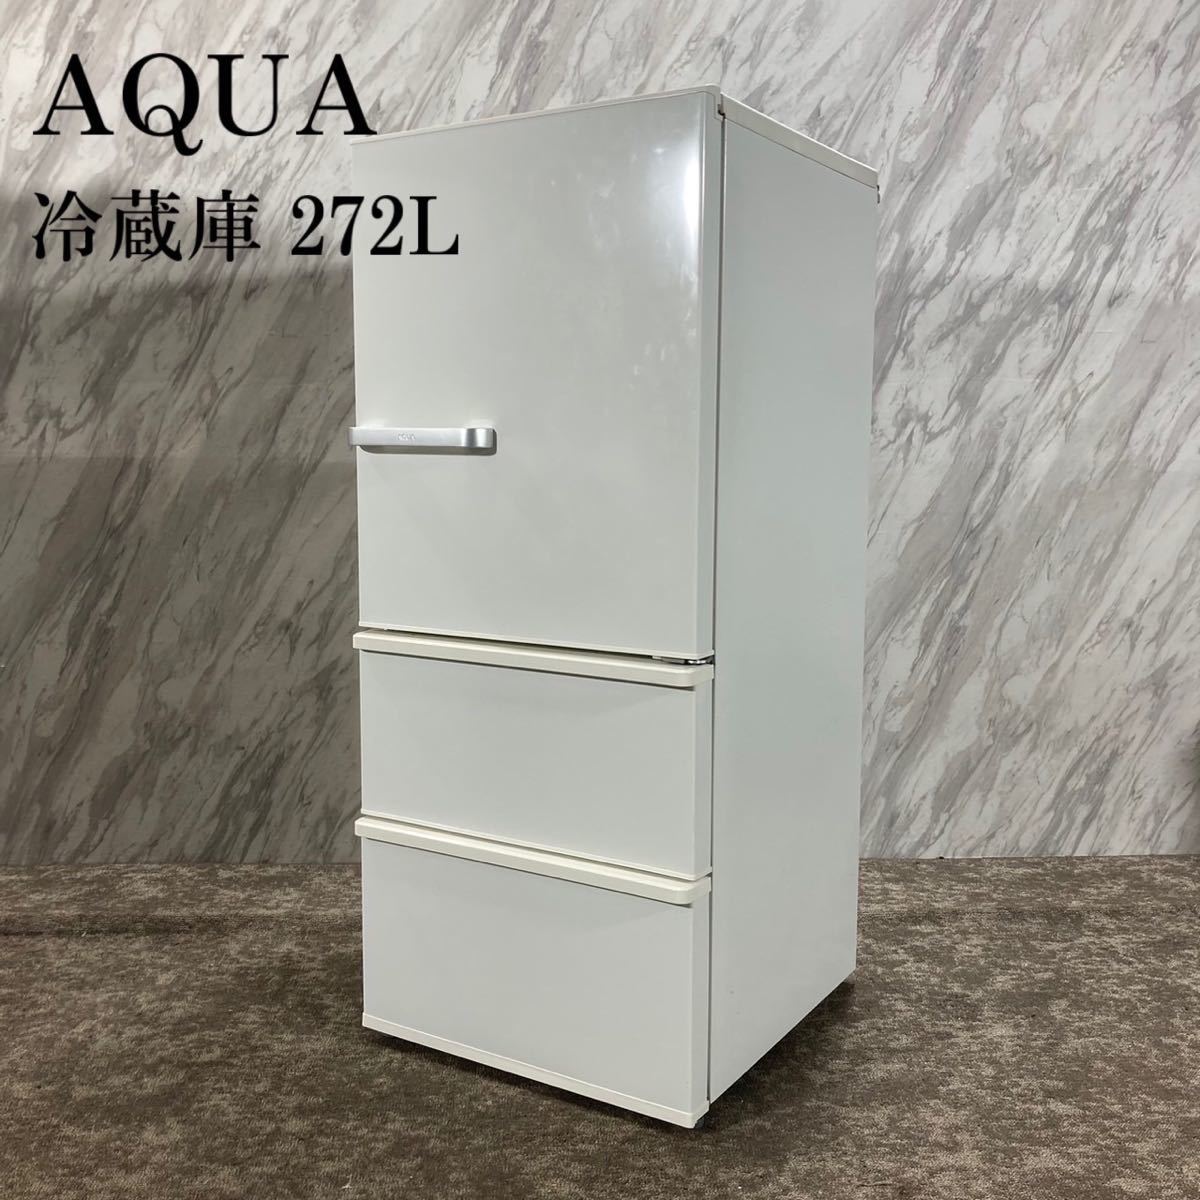 新作人気モデル 冷蔵庫 AQUA AQR-27G(W) K725 家電 2018年製 272L 200